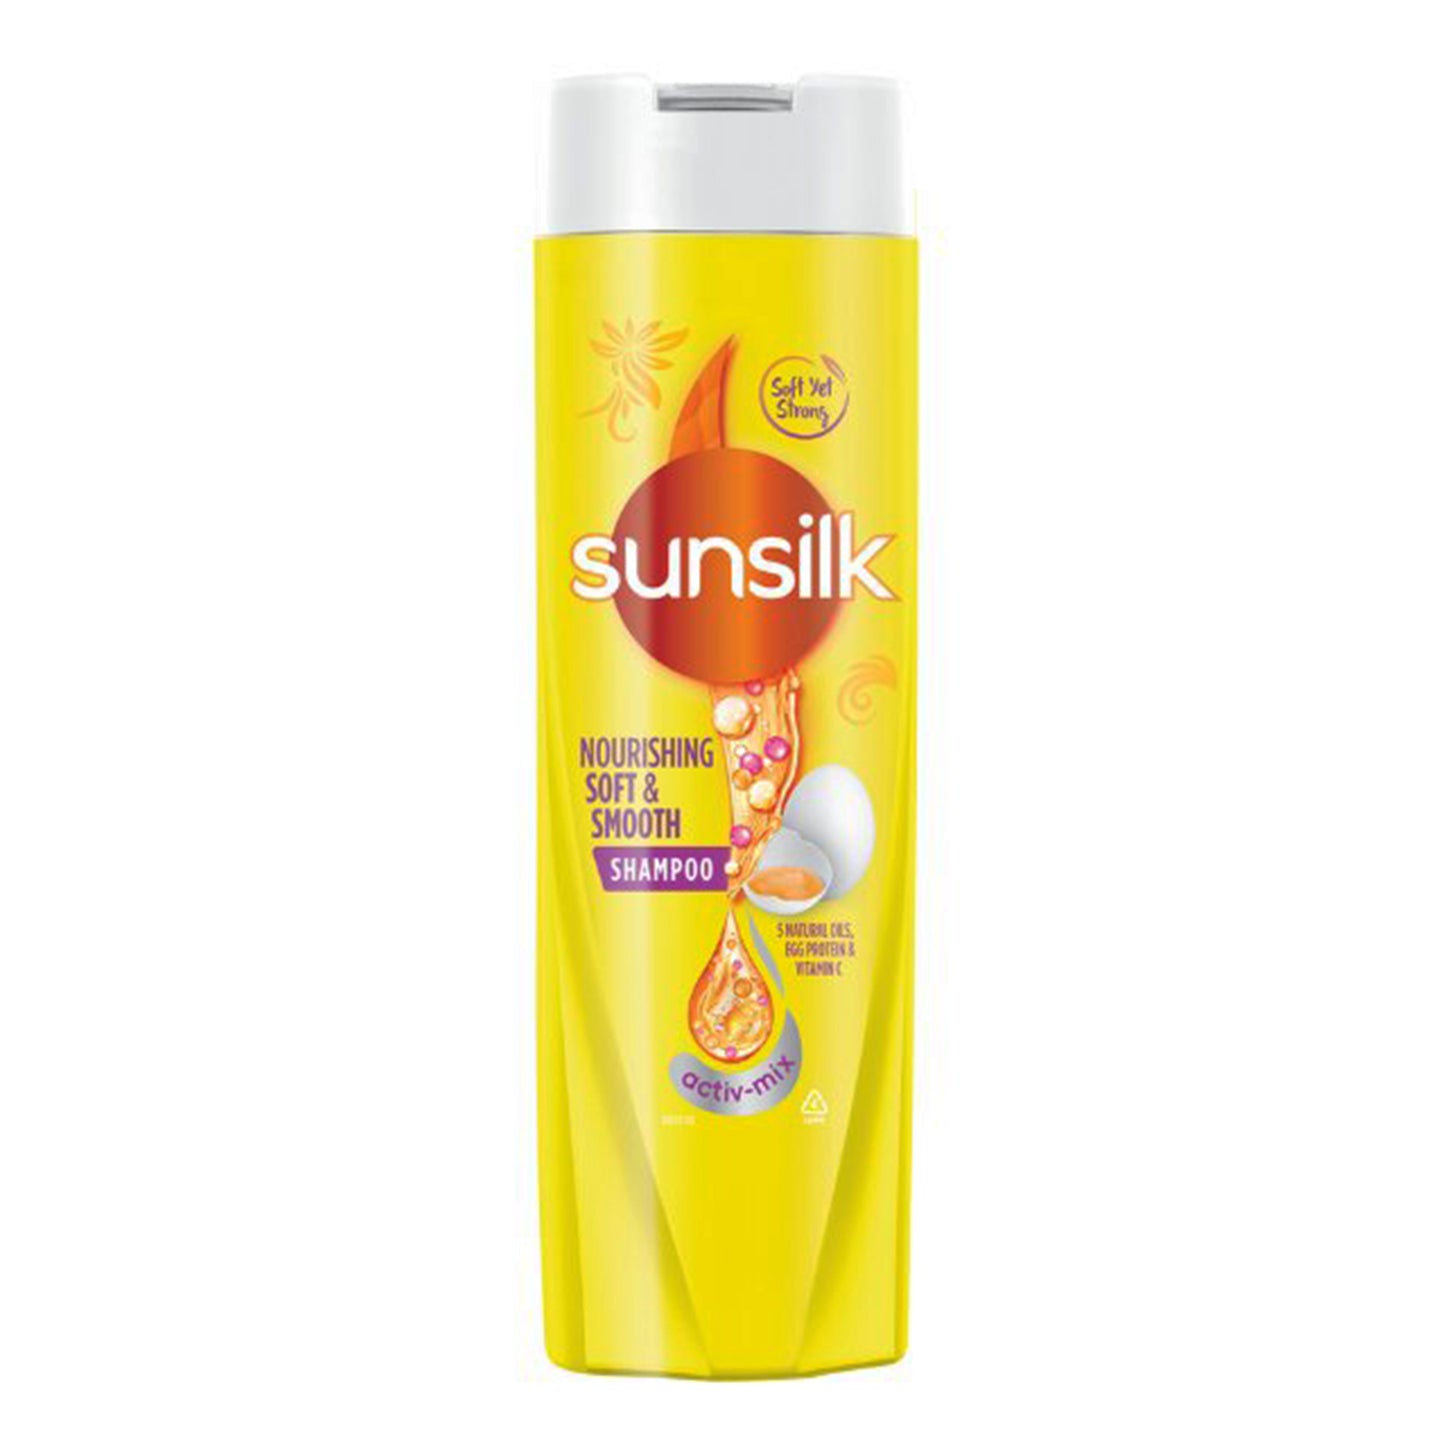 Sunsilk blød og glat shampoo (180ml)